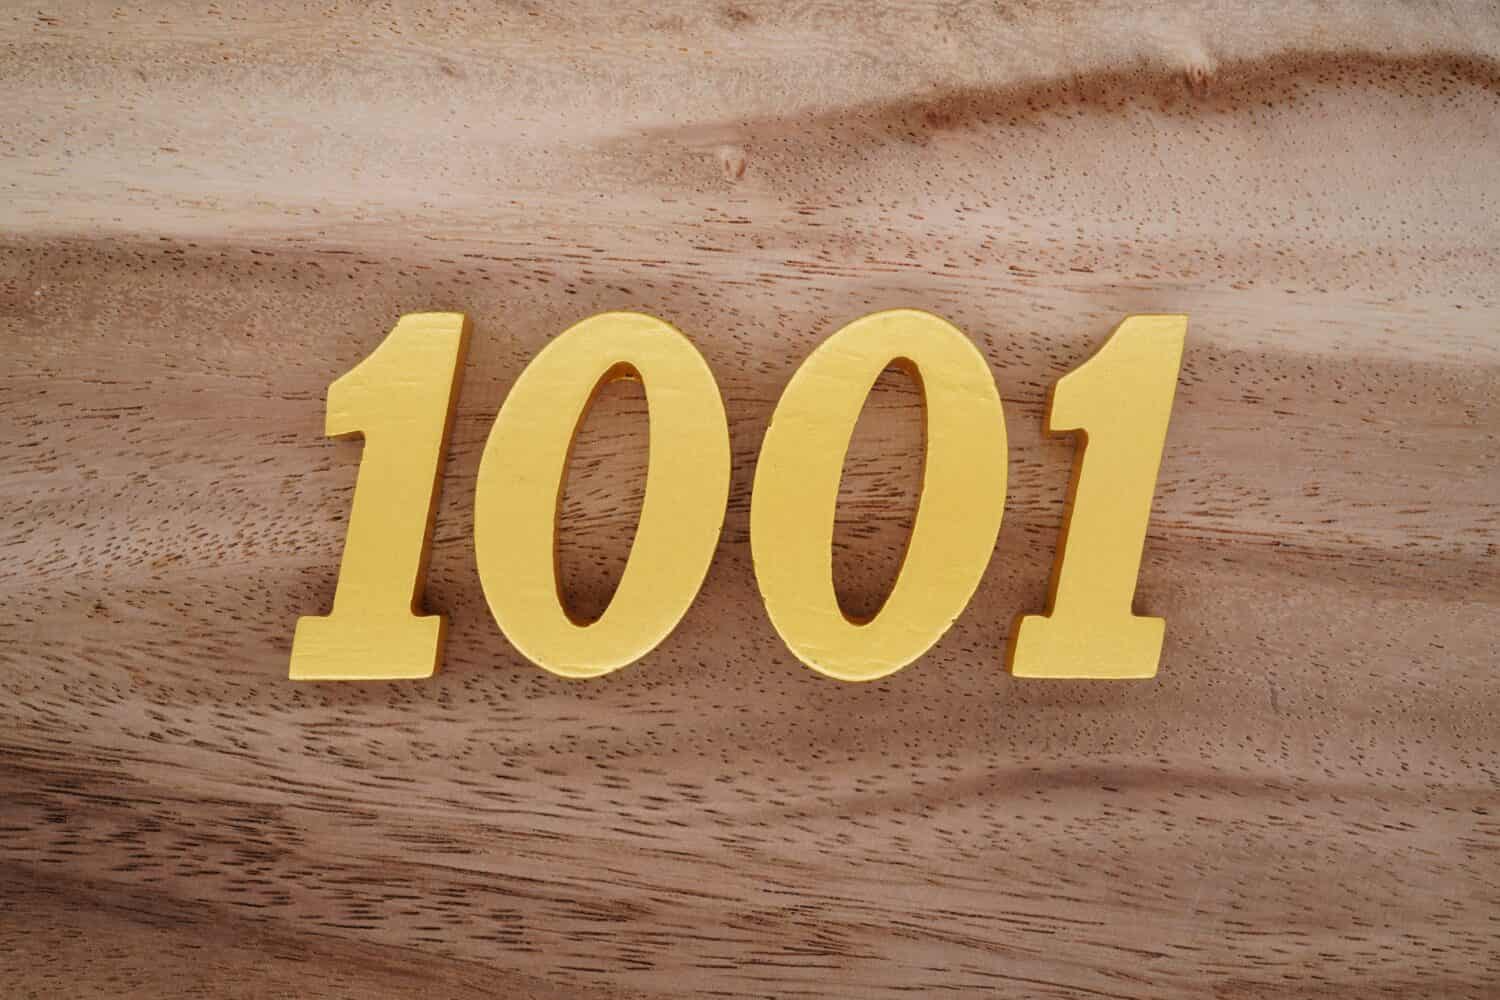 Numeri in legno 1001 dipinti in oro su uno sfondo a listoni con motivi marrone scuro e bianco.